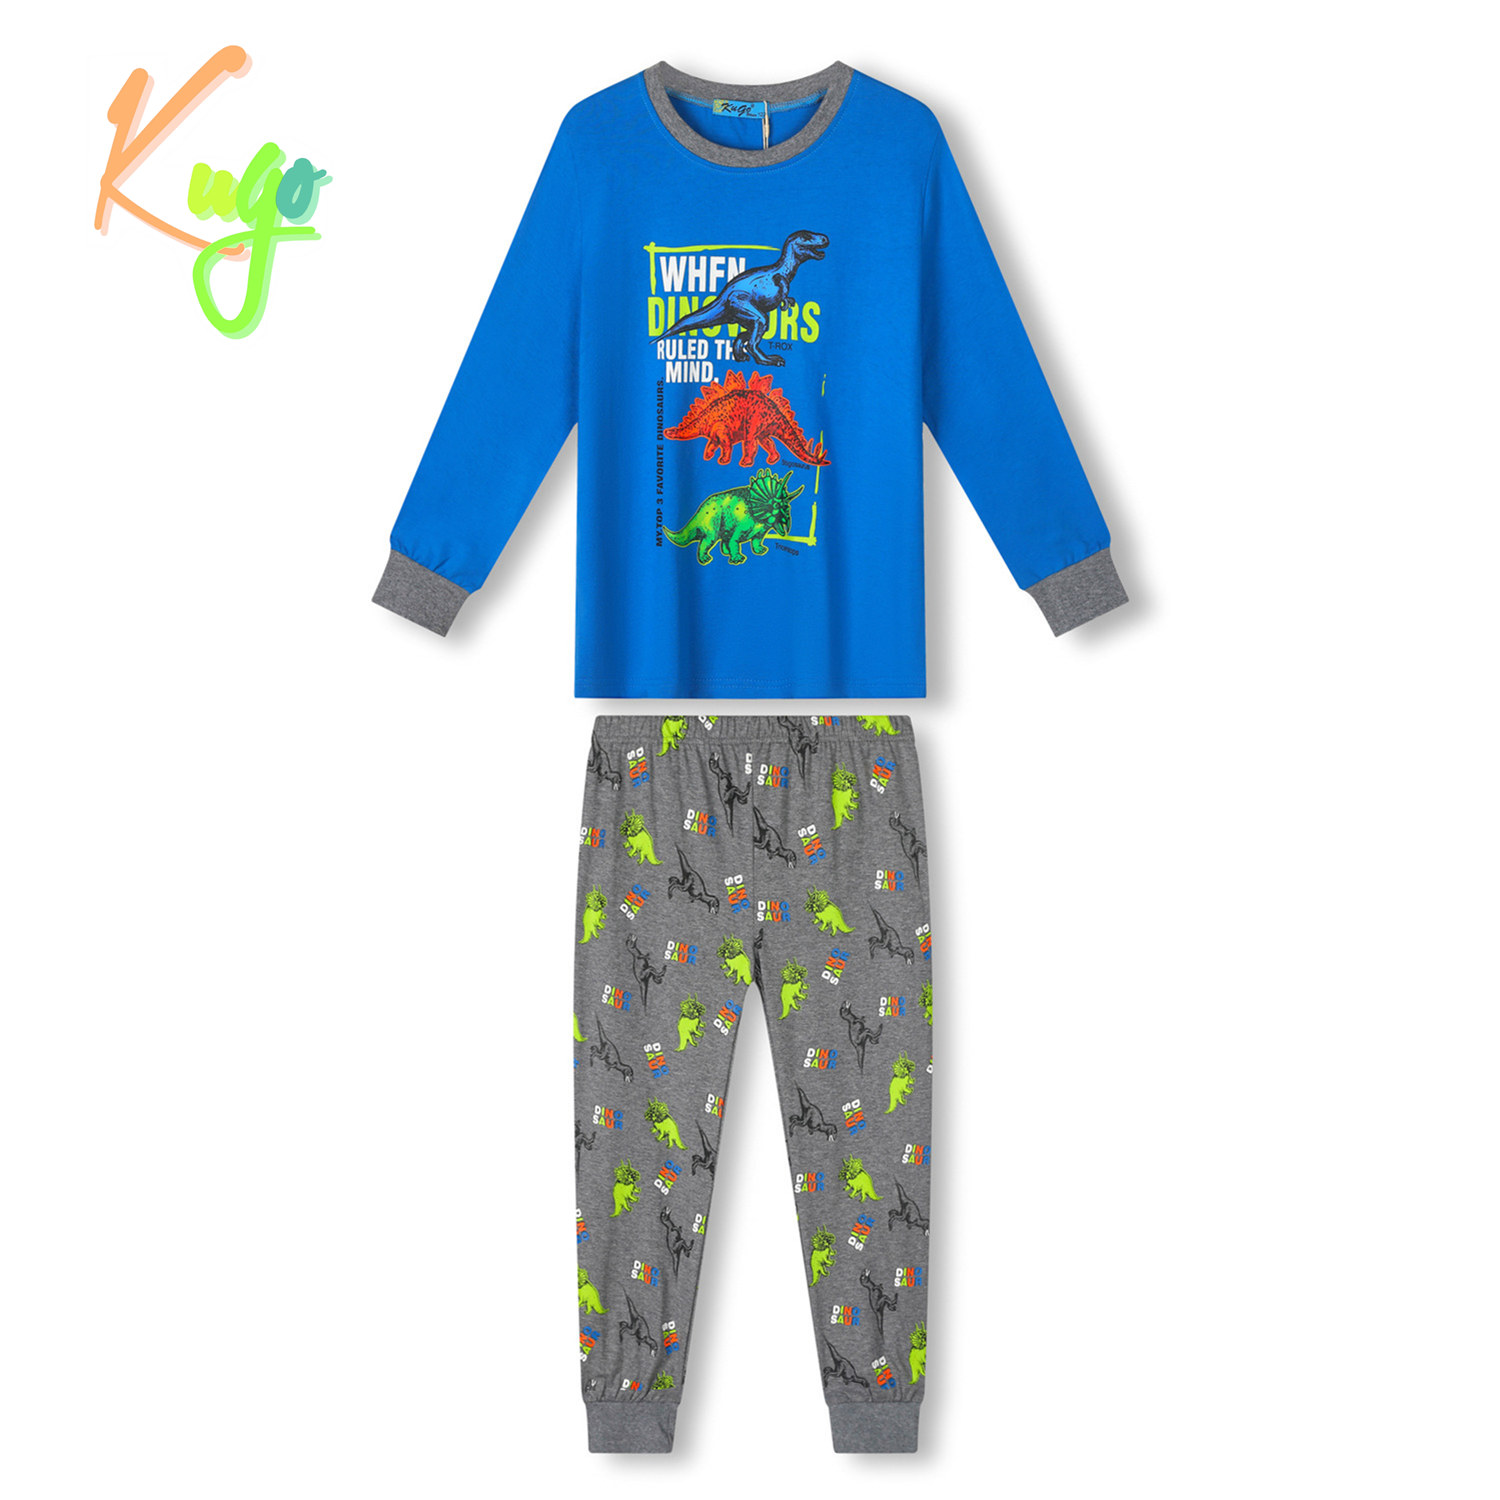 Chlapecké pyžamo - KUGO MP3776, modrá/ šedá Barva: Modrá, Velikost: 98